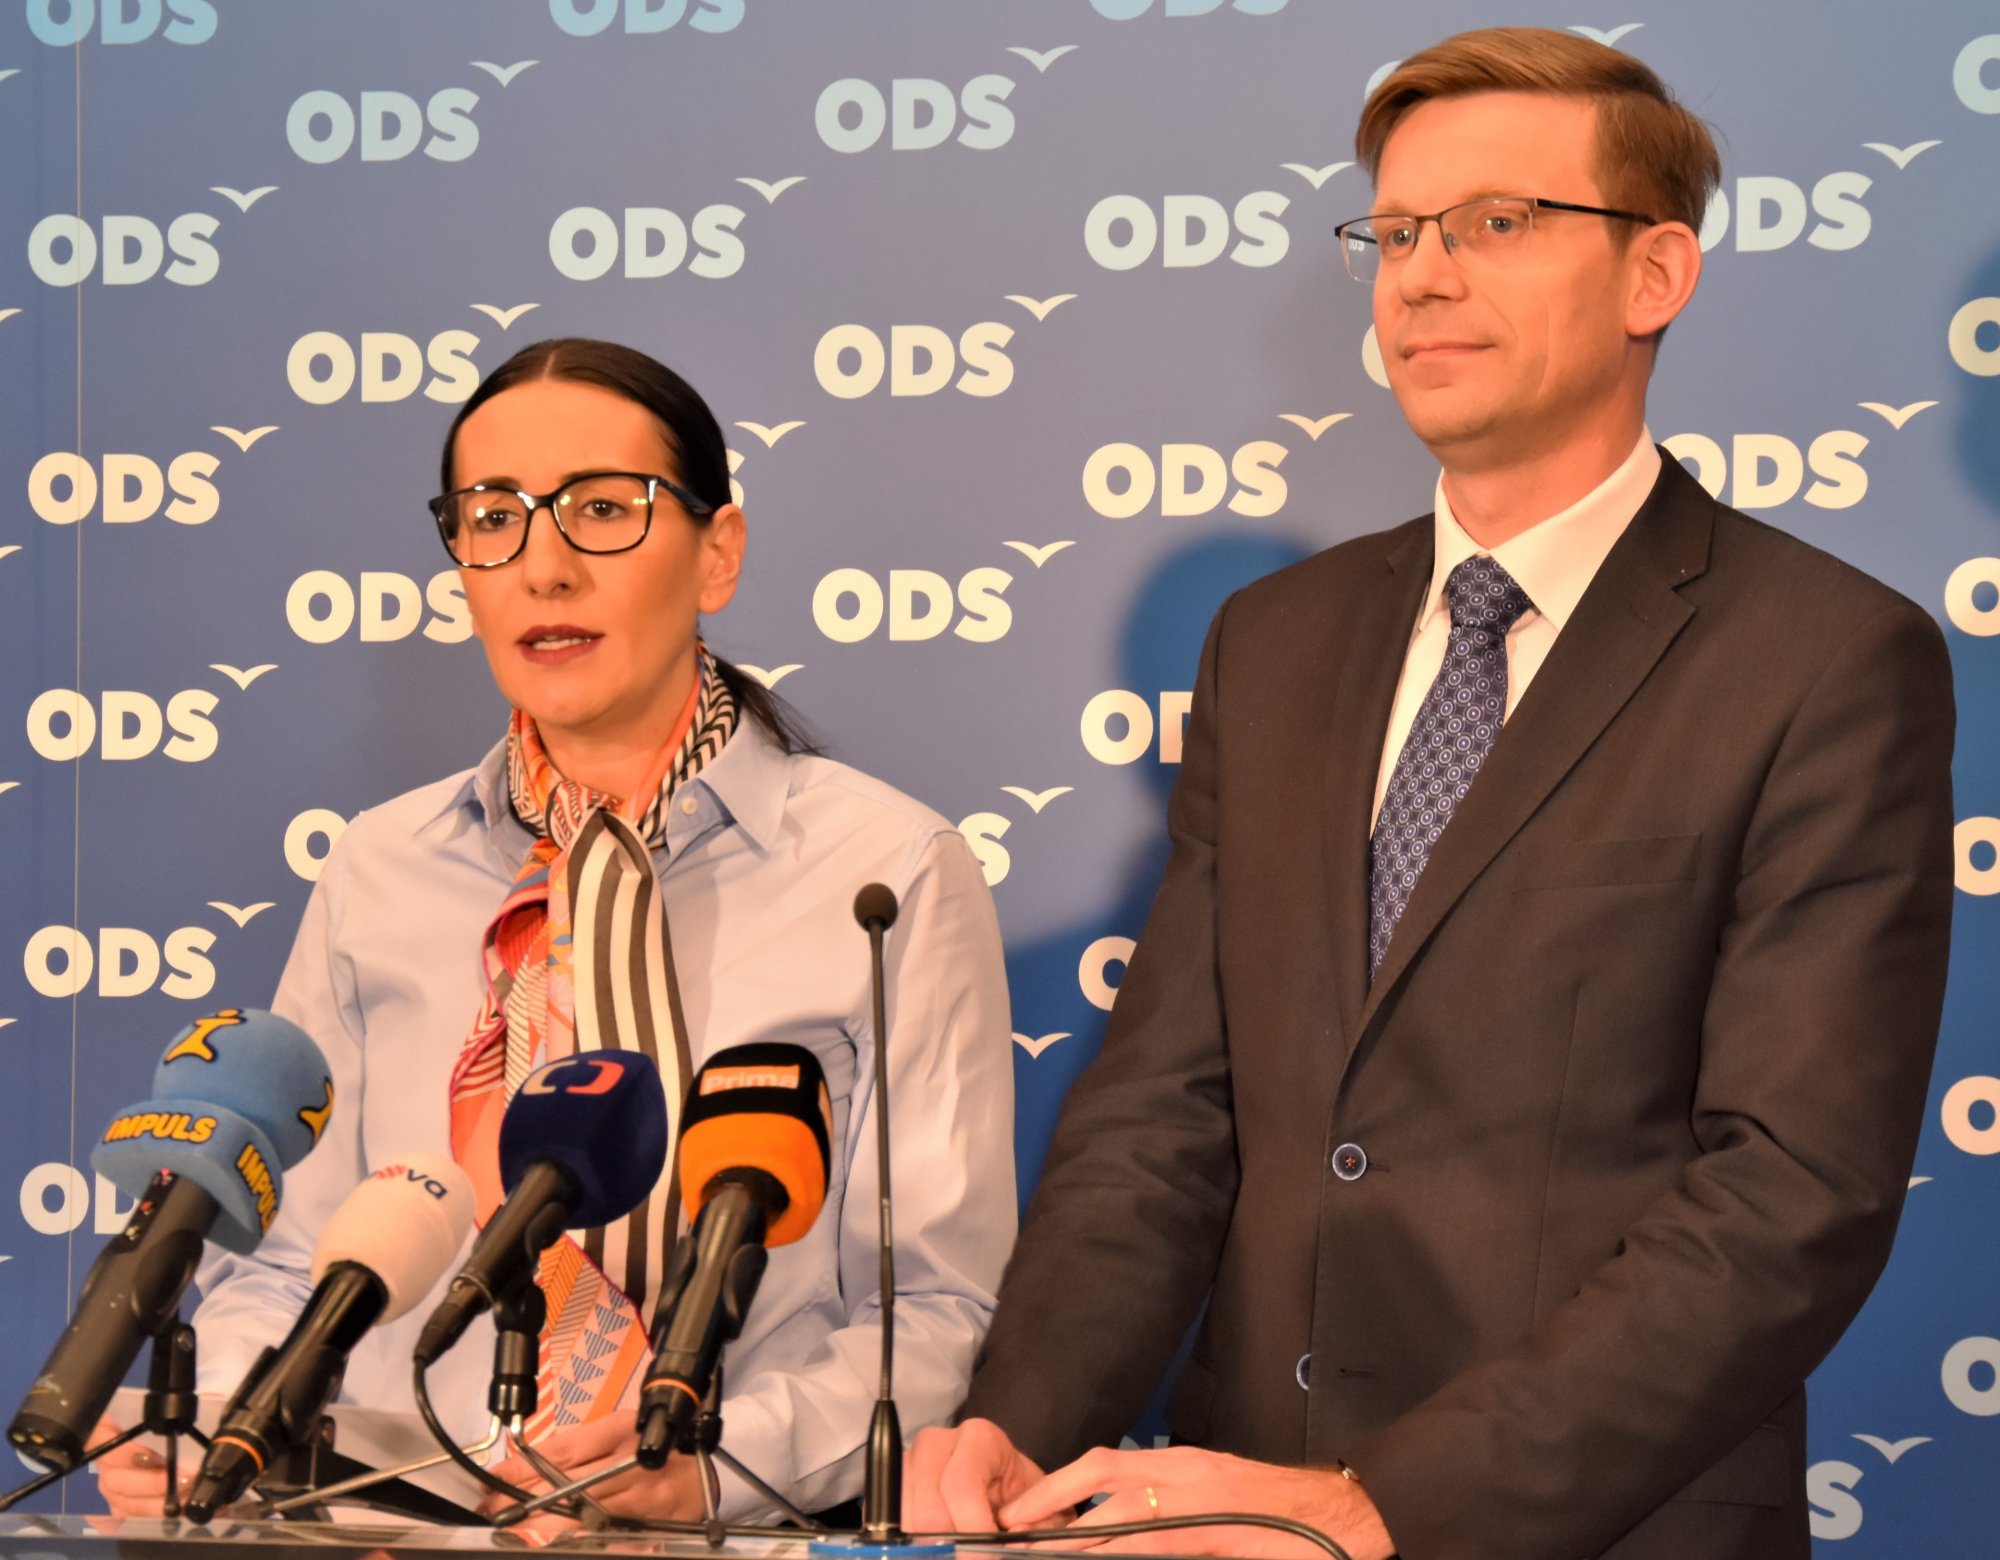 ODS: Chceme znovu jednat s poslaneckými kluby o podpoře Petra Fialy do čela Sněmovny